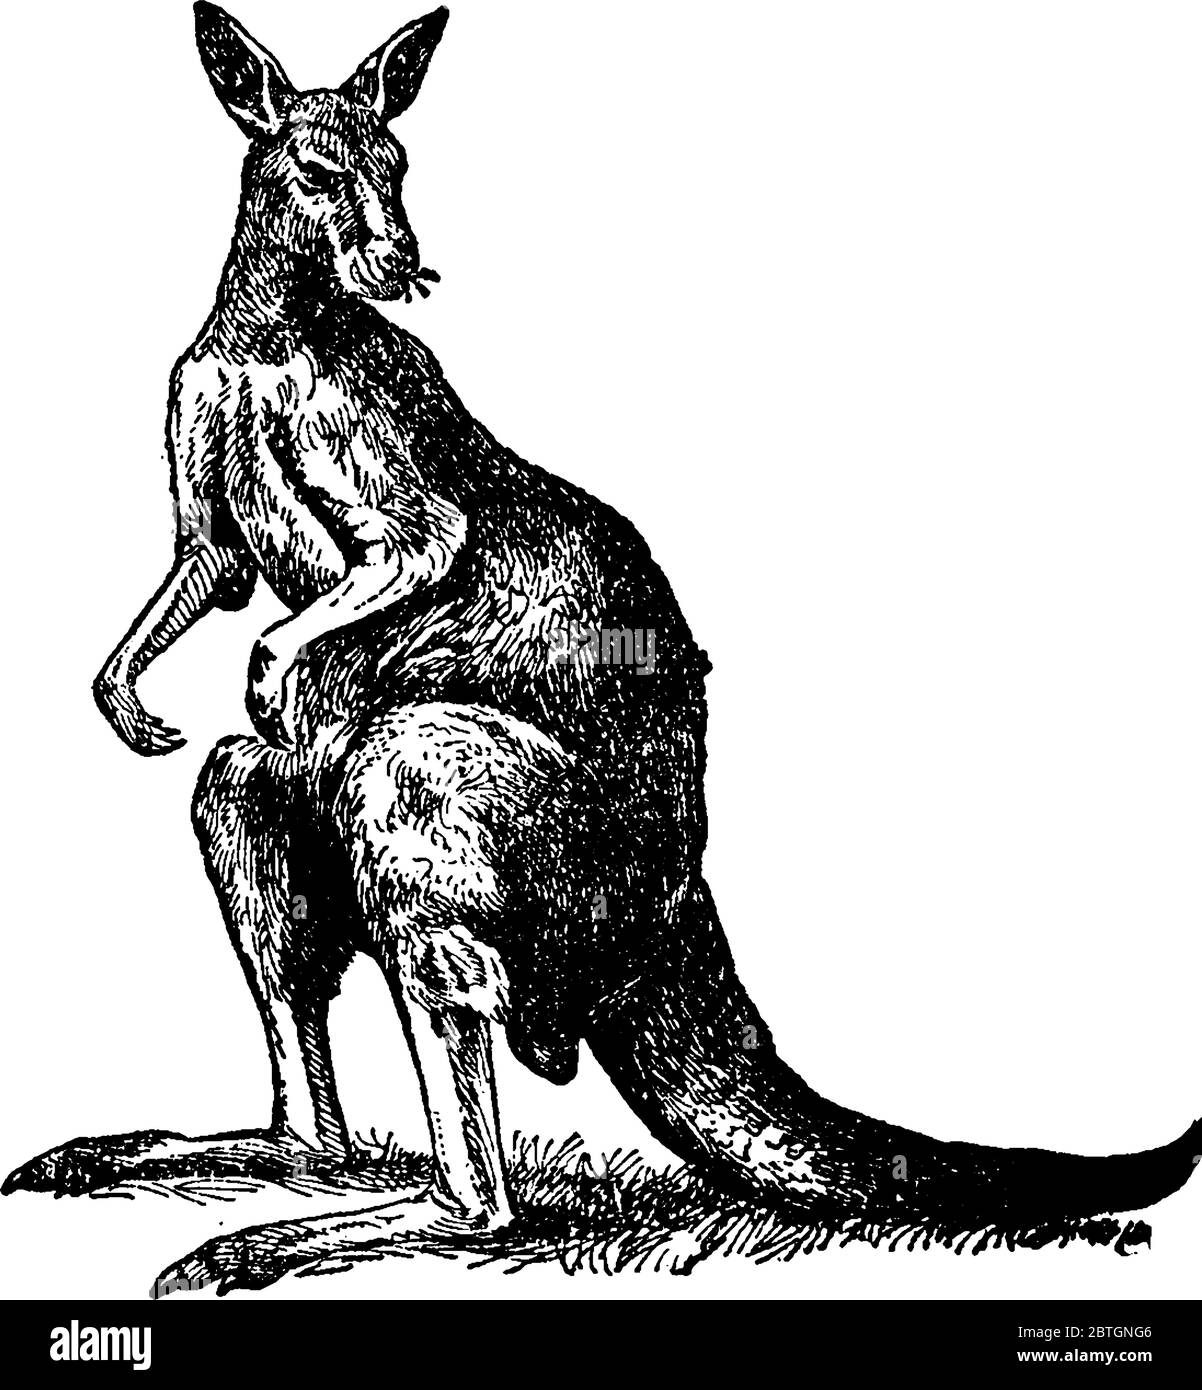 Ils sont un animal de l'Australie, avec une petite tête, des pattes arrière grandes et puissantes, une queue énorme, des membres avant courts, et est à peu près à la hauteur d'un homme. Femme Illustration de Vecteur